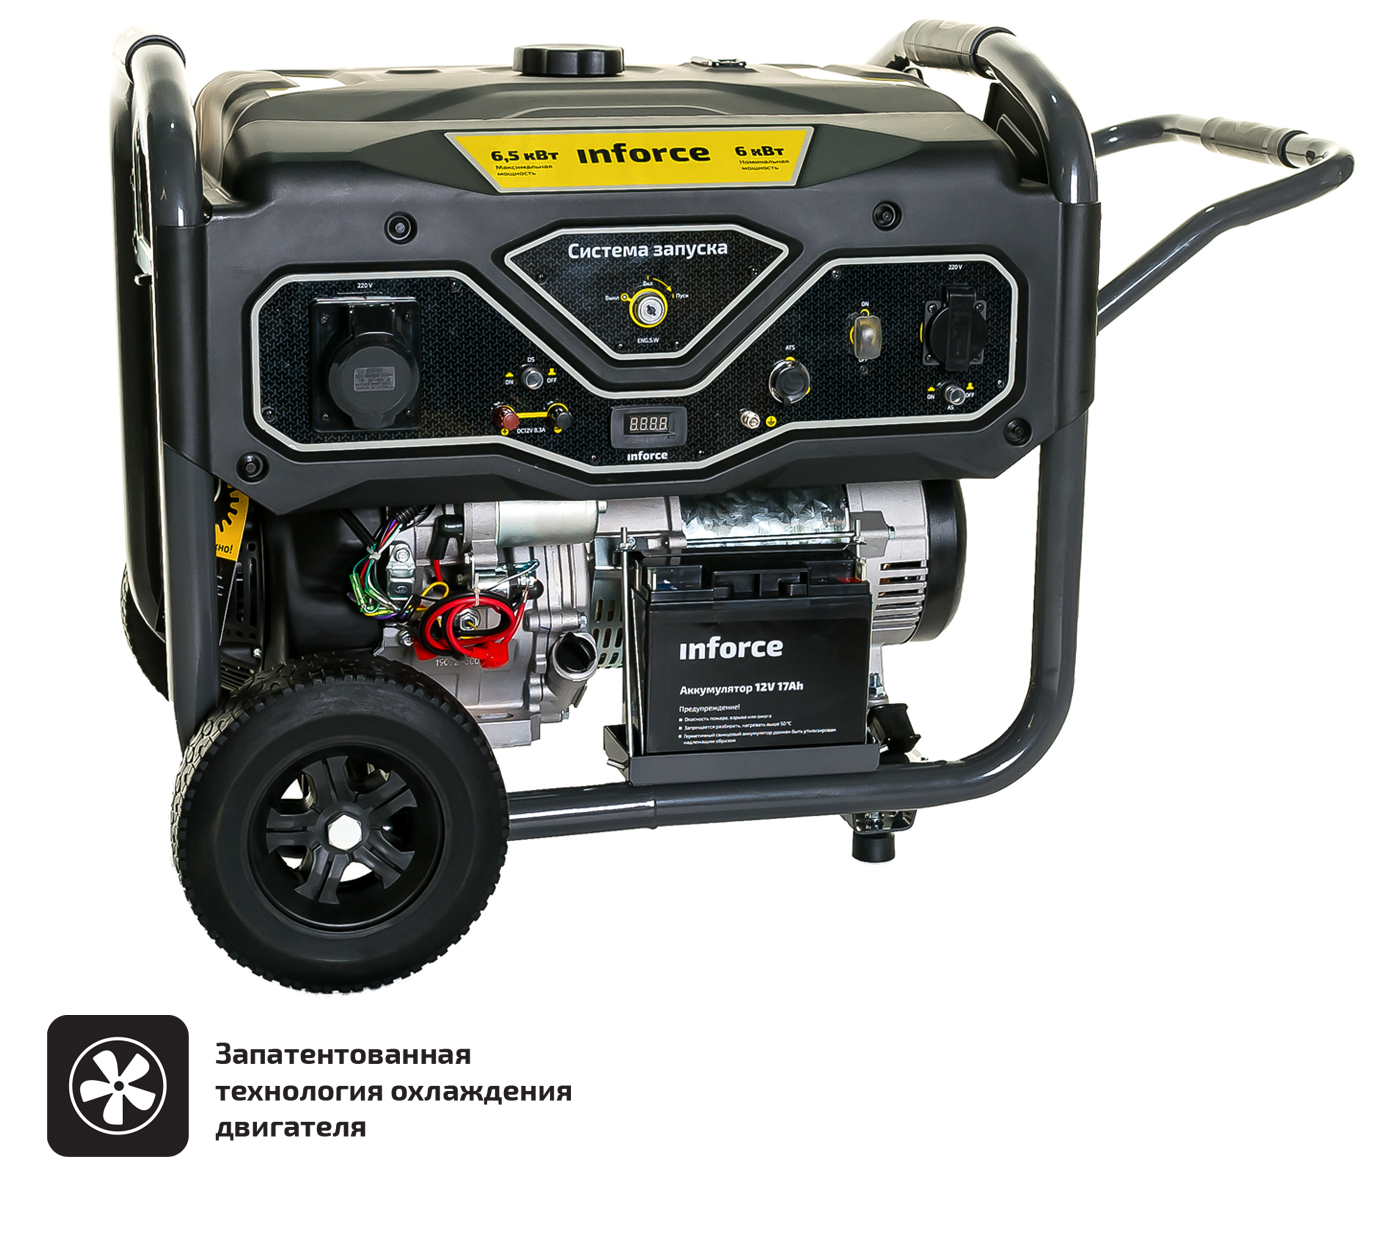 Бензиновый генератор с возможностью подключения блока автоматики Inforce GL 6500 04-03-15 генератор бензиновый daewoo gda 6500